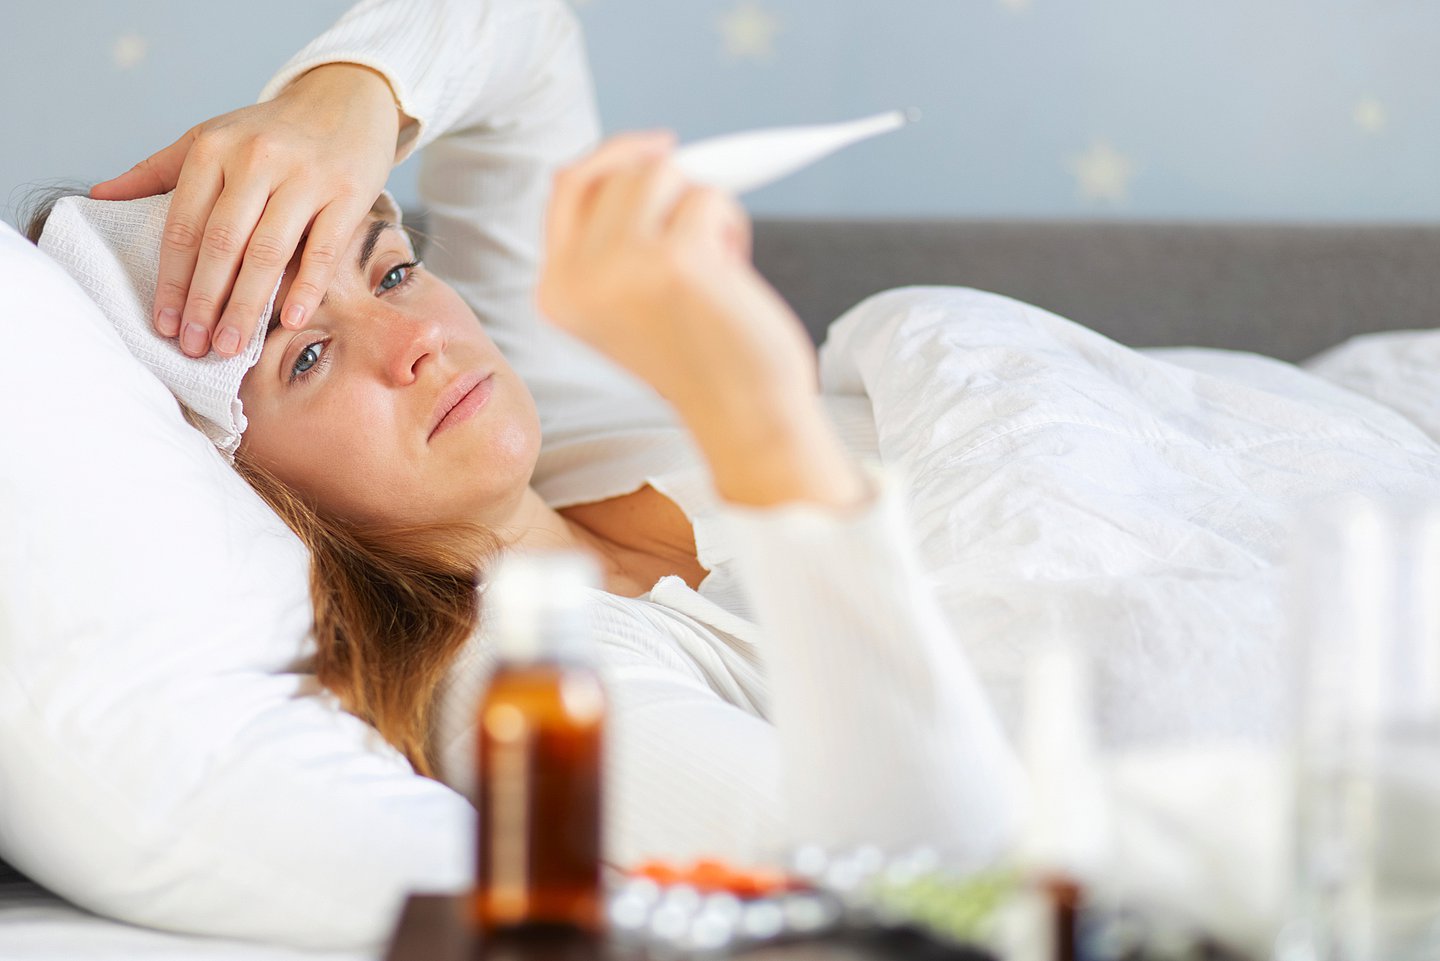 Das Foto zeigt eine Frau im Bett, die ein Fieberthermometer vor sich abliest.